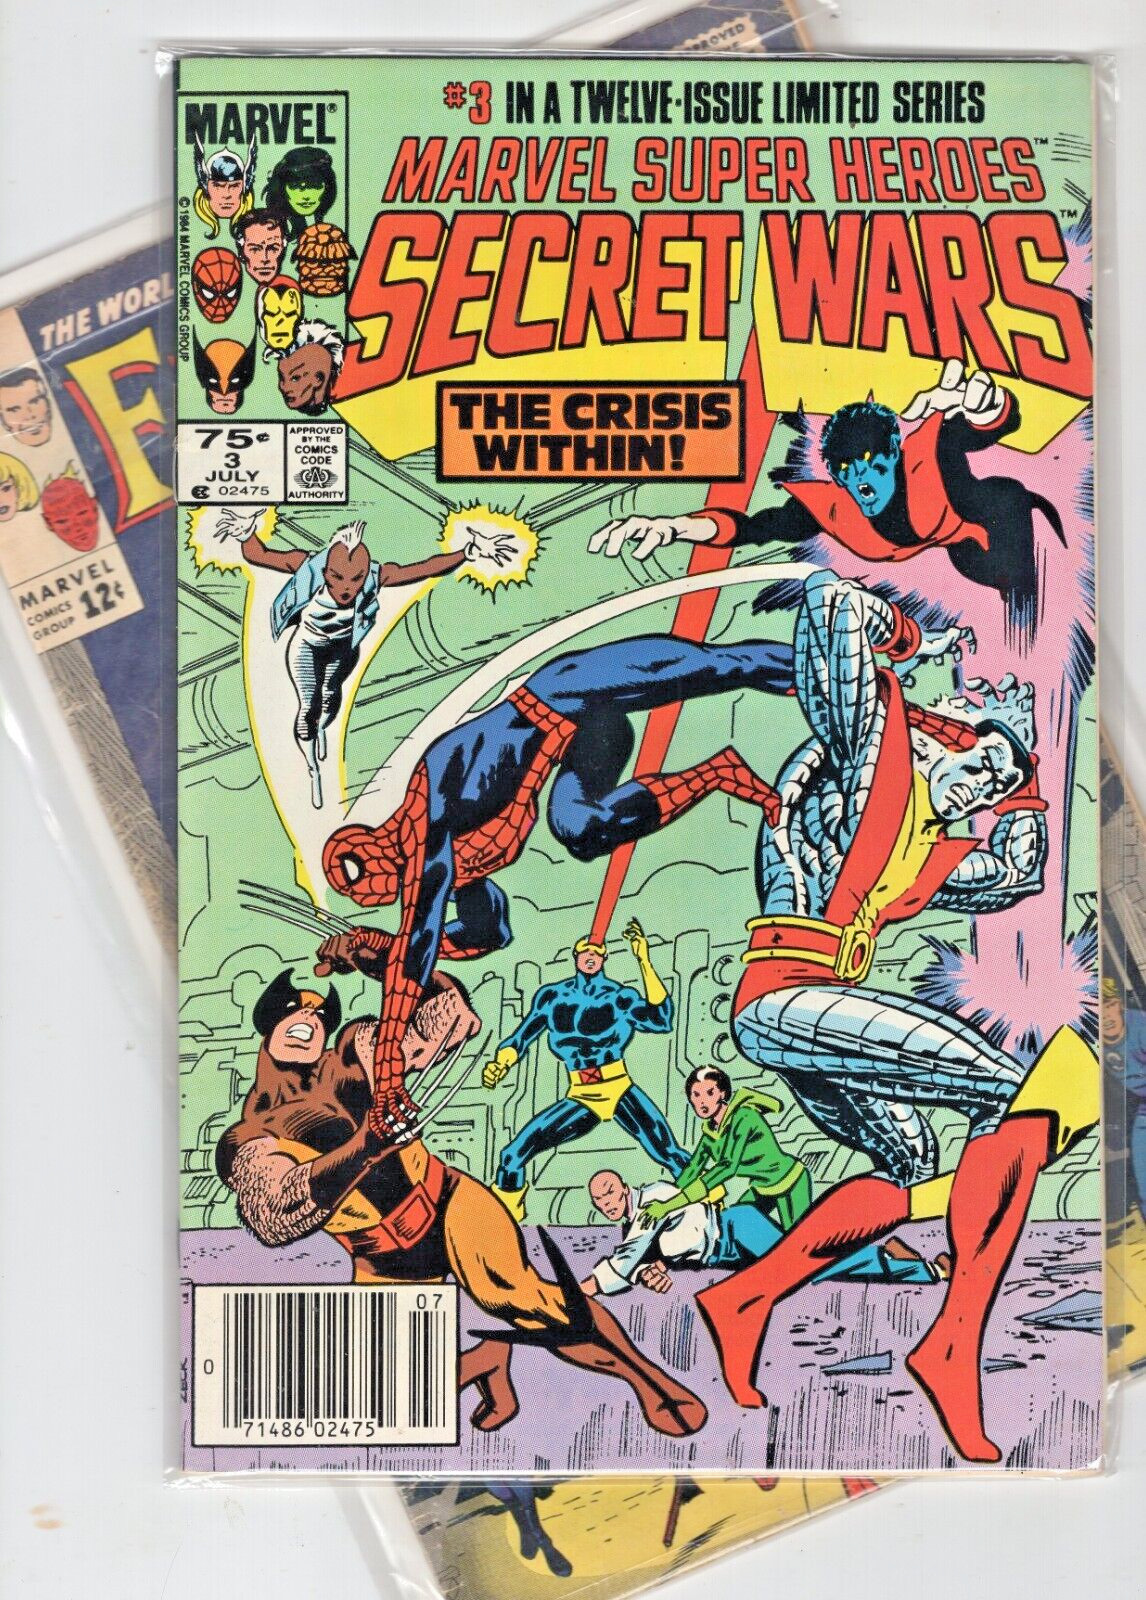 Marvel Super Heroes Secret Wars # 3 Newsstand July 1984 Marvel Comics